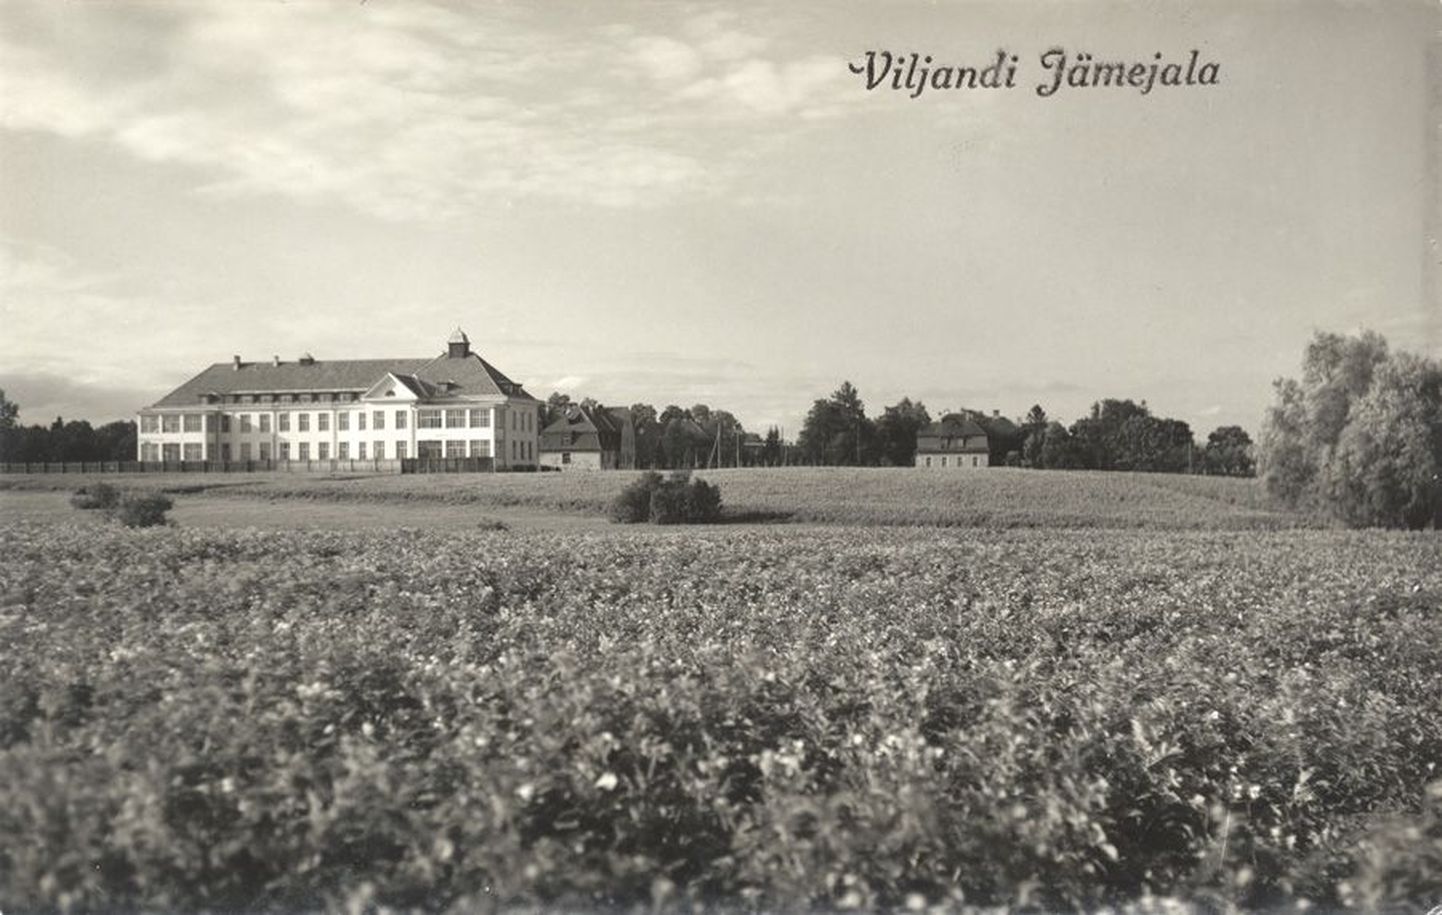 Jämejala haigla aastal 1932. Asutuse eelarvest tuli toona üheksa kümnendikku riigilt, ülejäänud osa oli vaimuhaigla enda aastane sissetulek. Suurem osa sellest tuli talupidamisest, ülejäänu haigete omakseilt või omavalitsustelt.